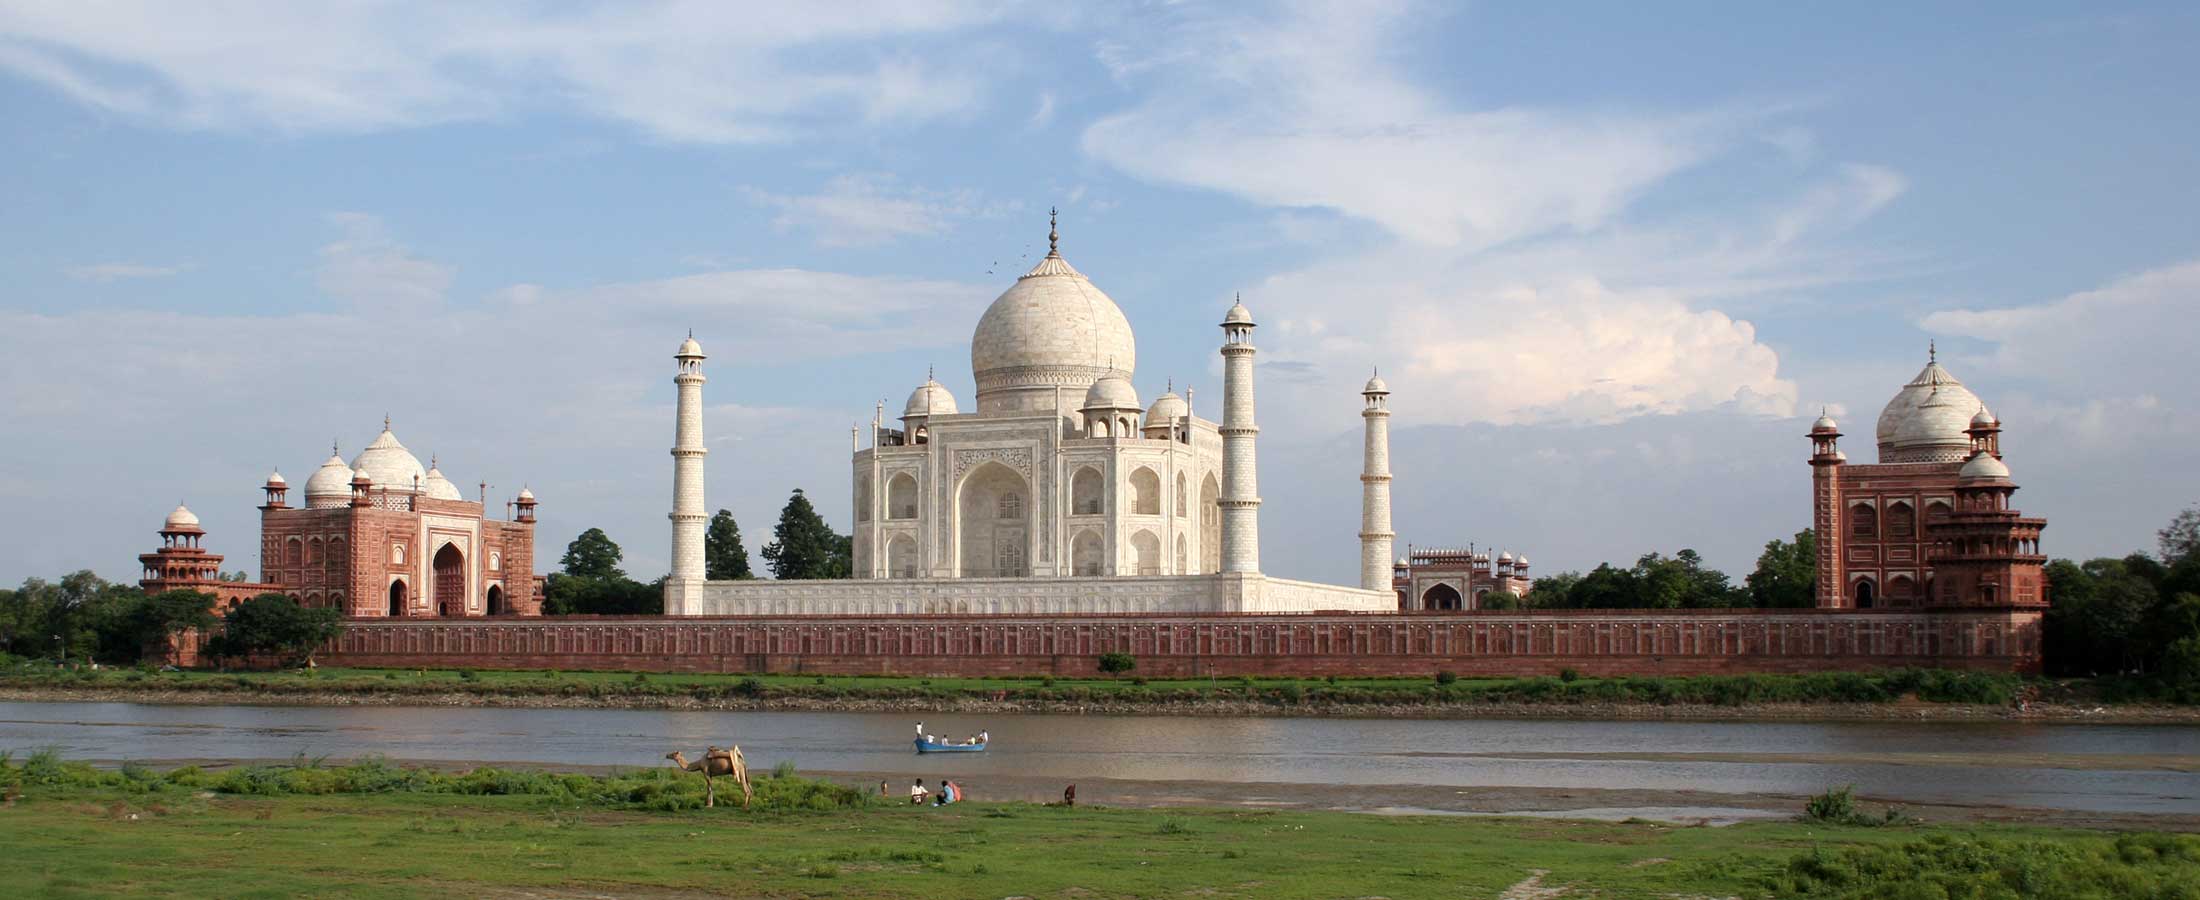 About Taj Mahal